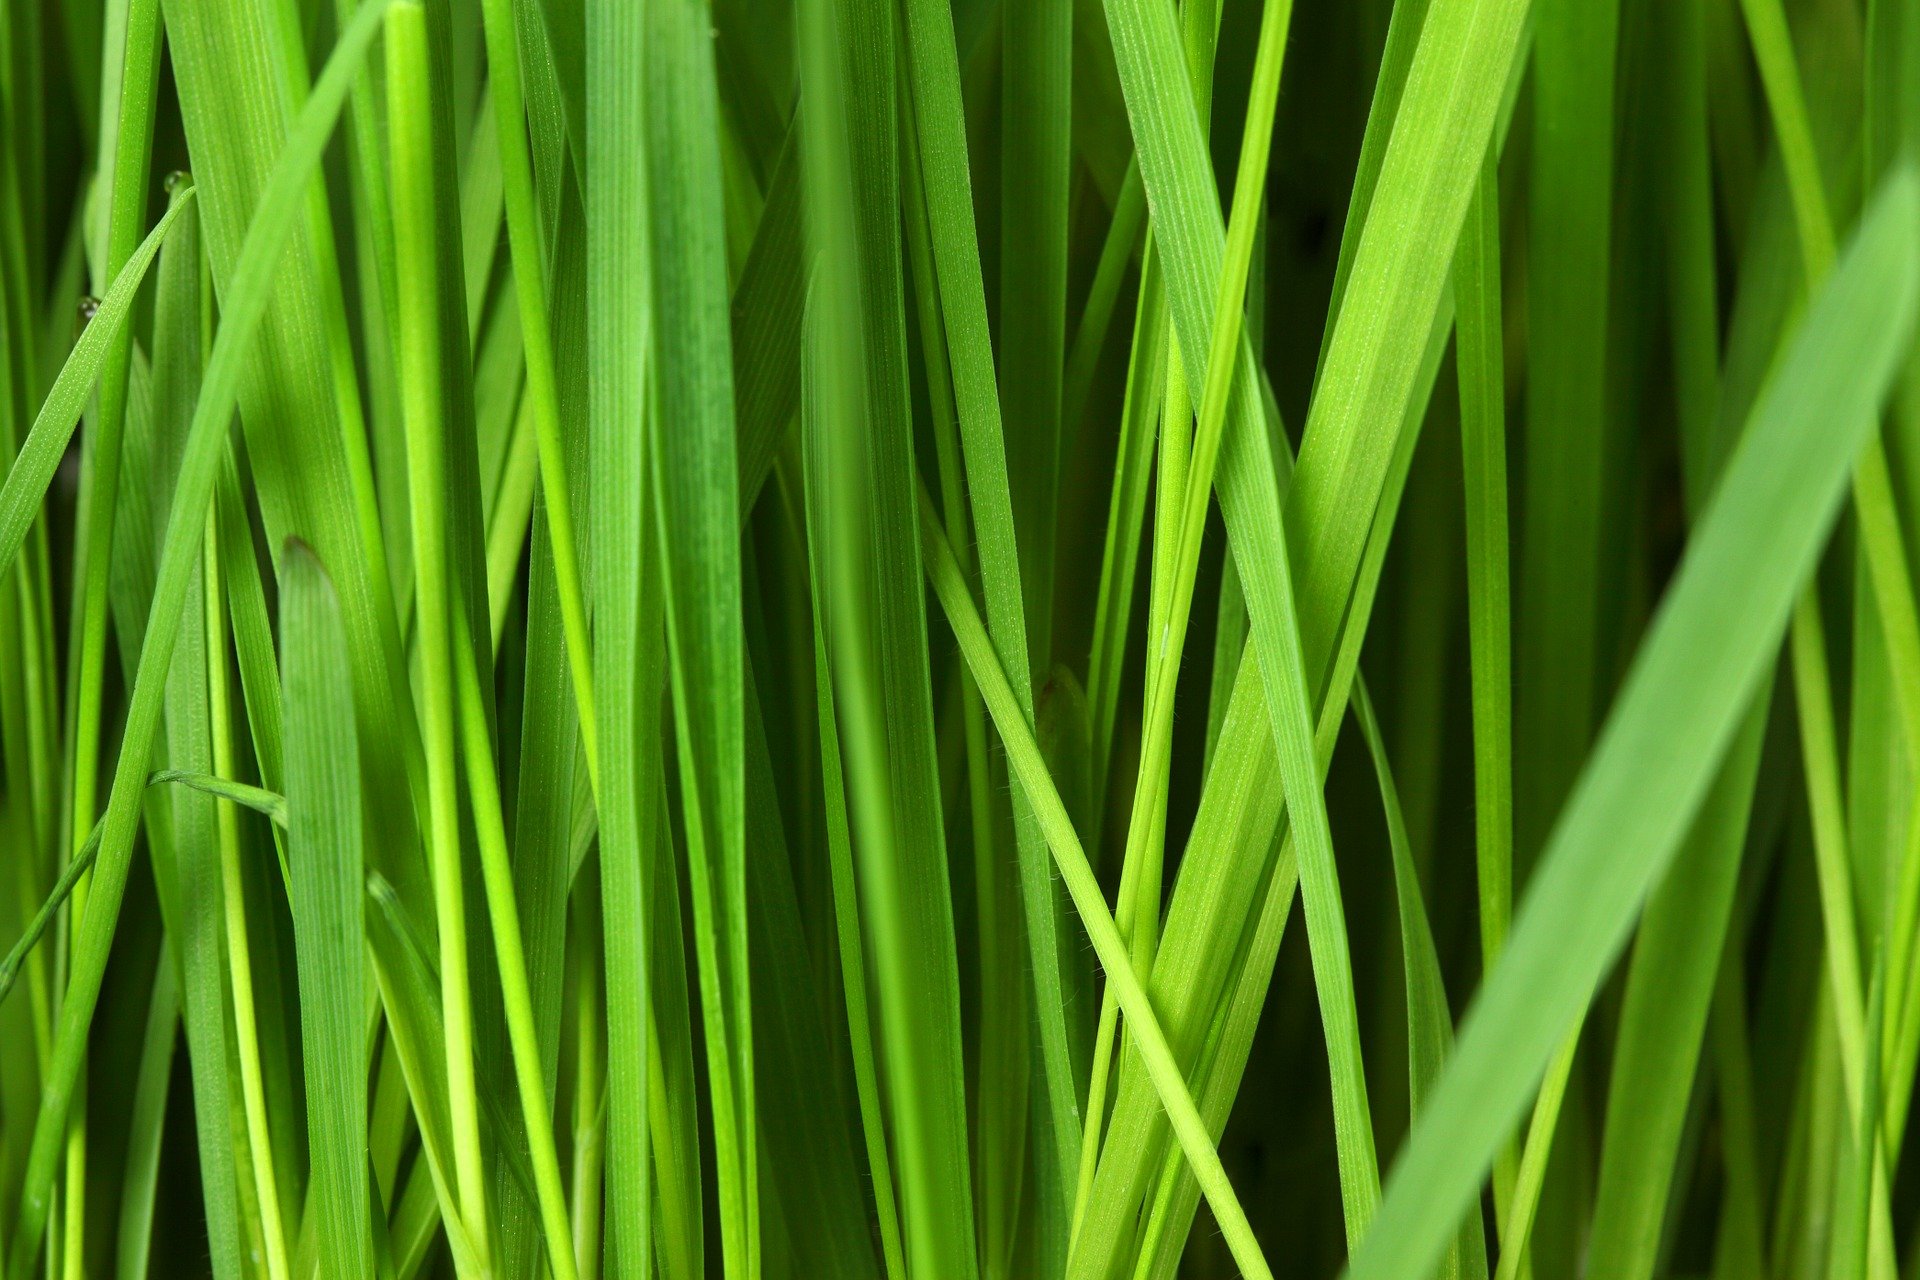 grass